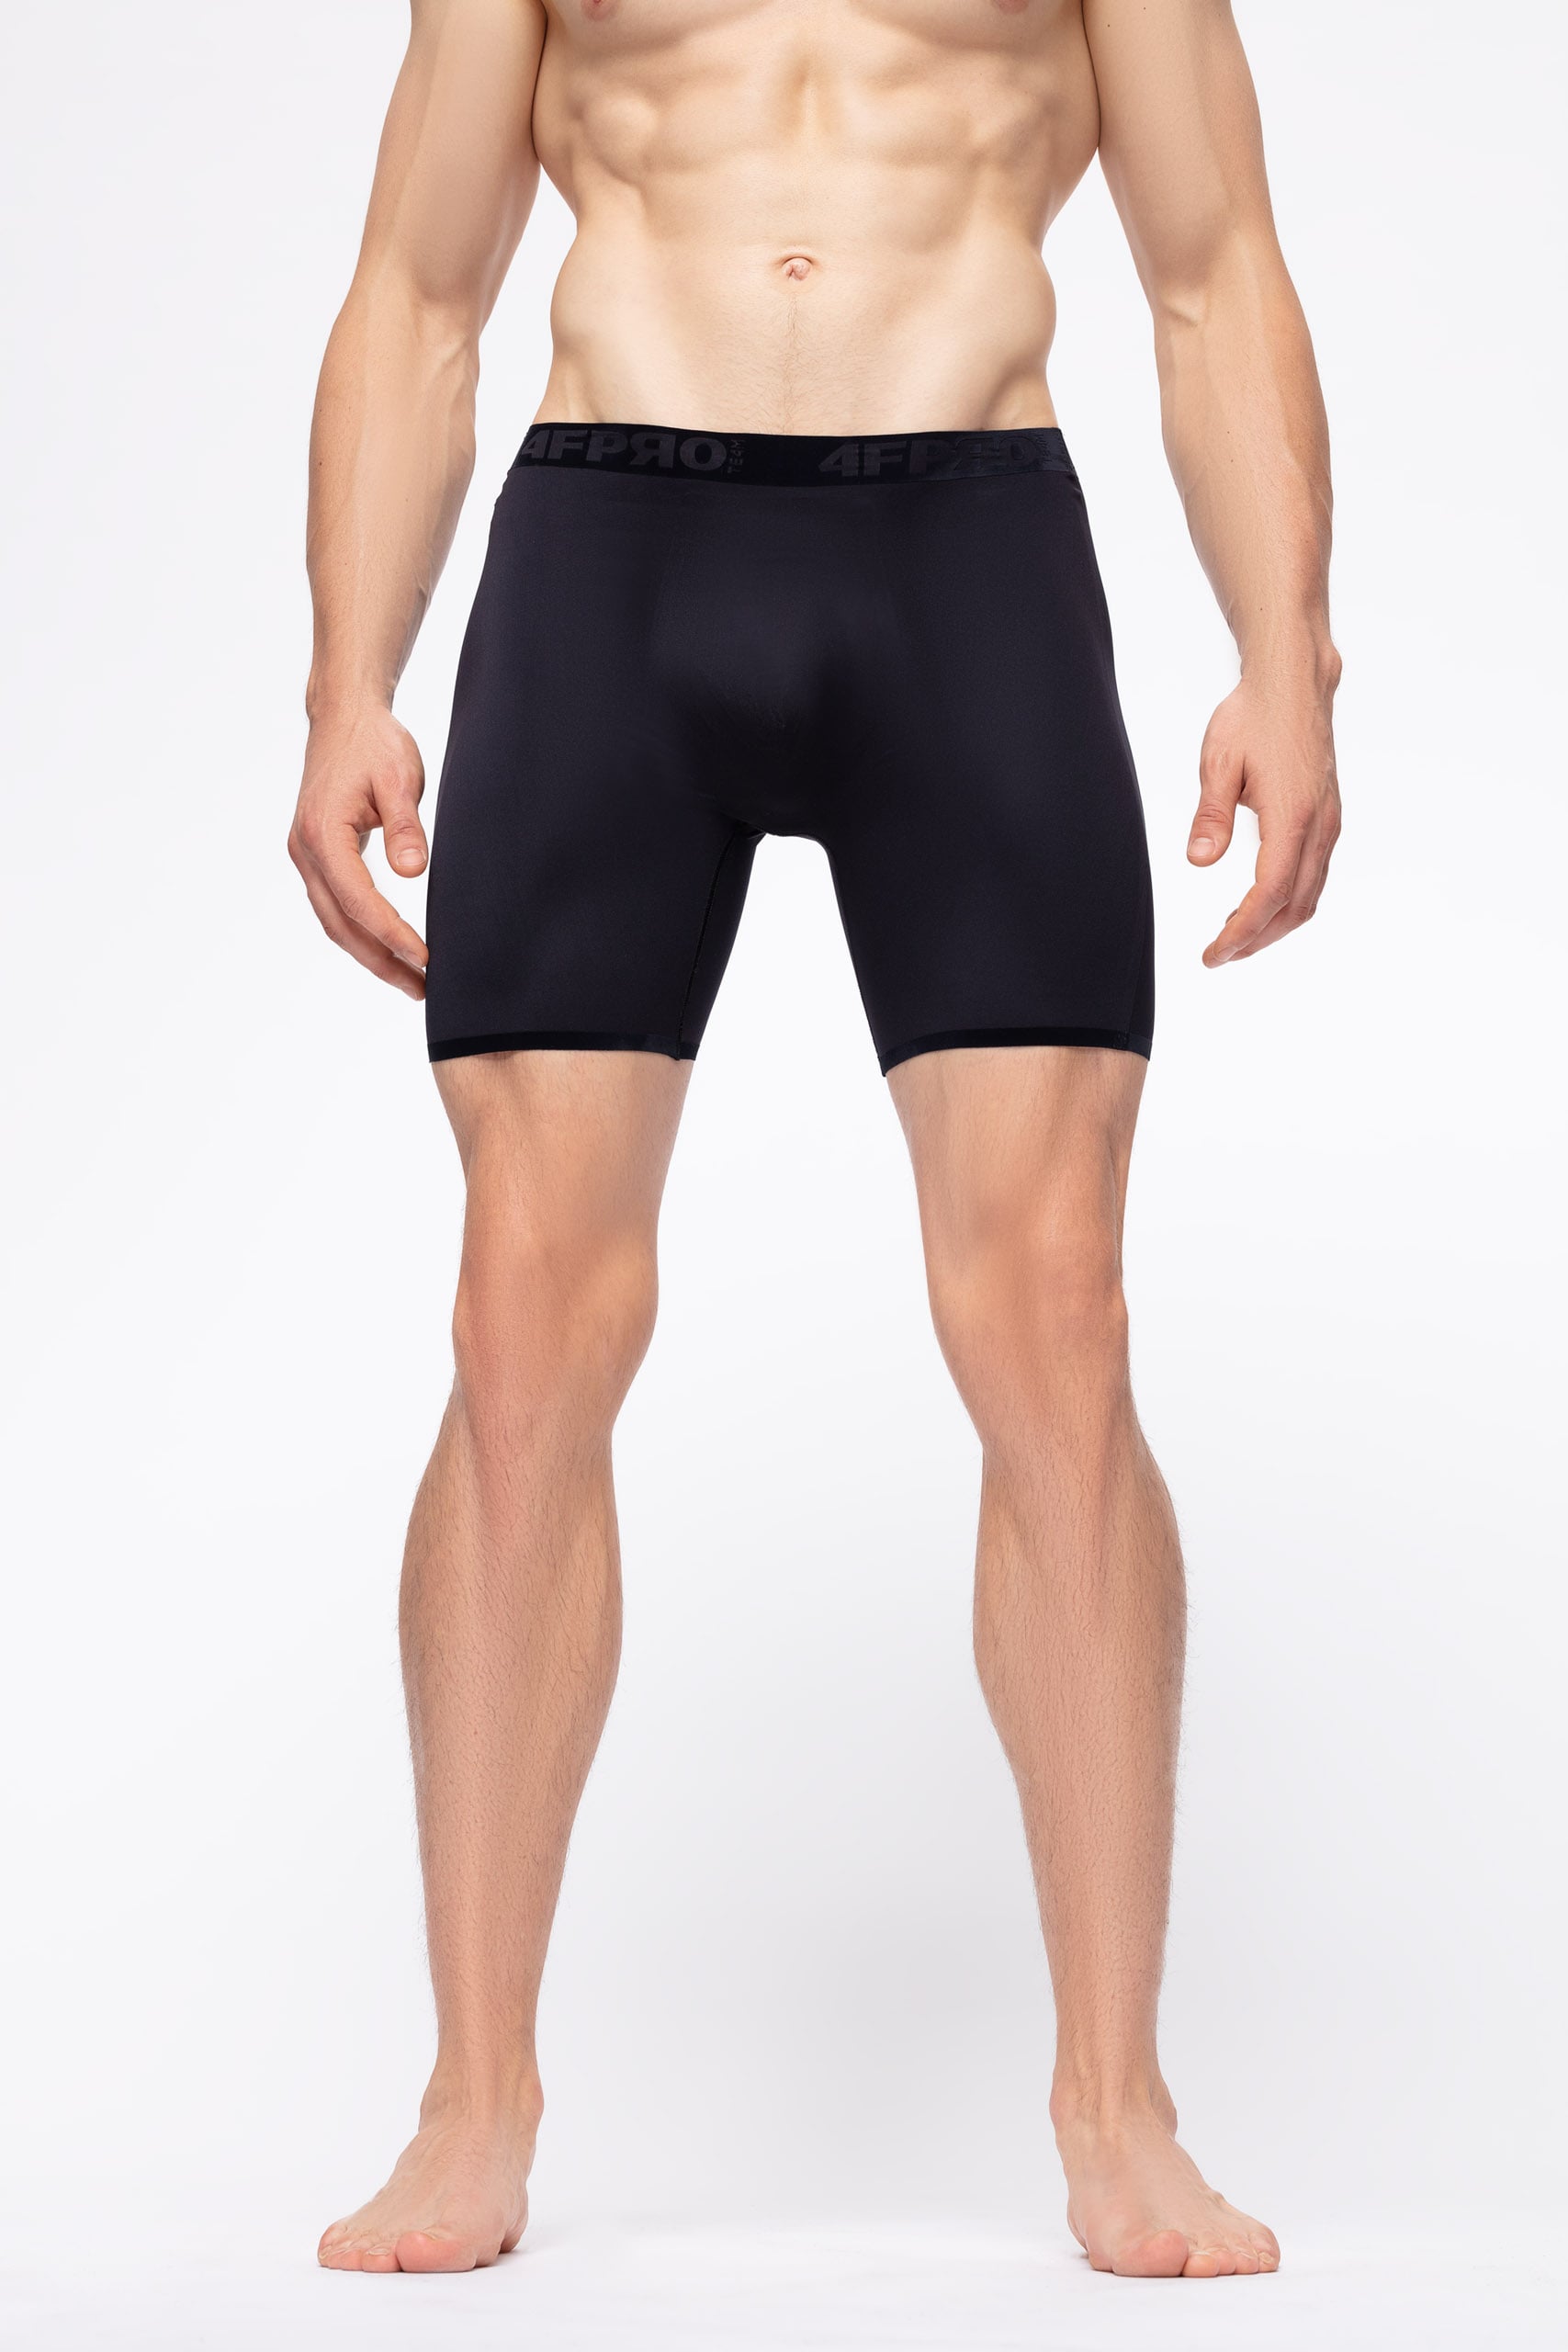 mens base layer underwear